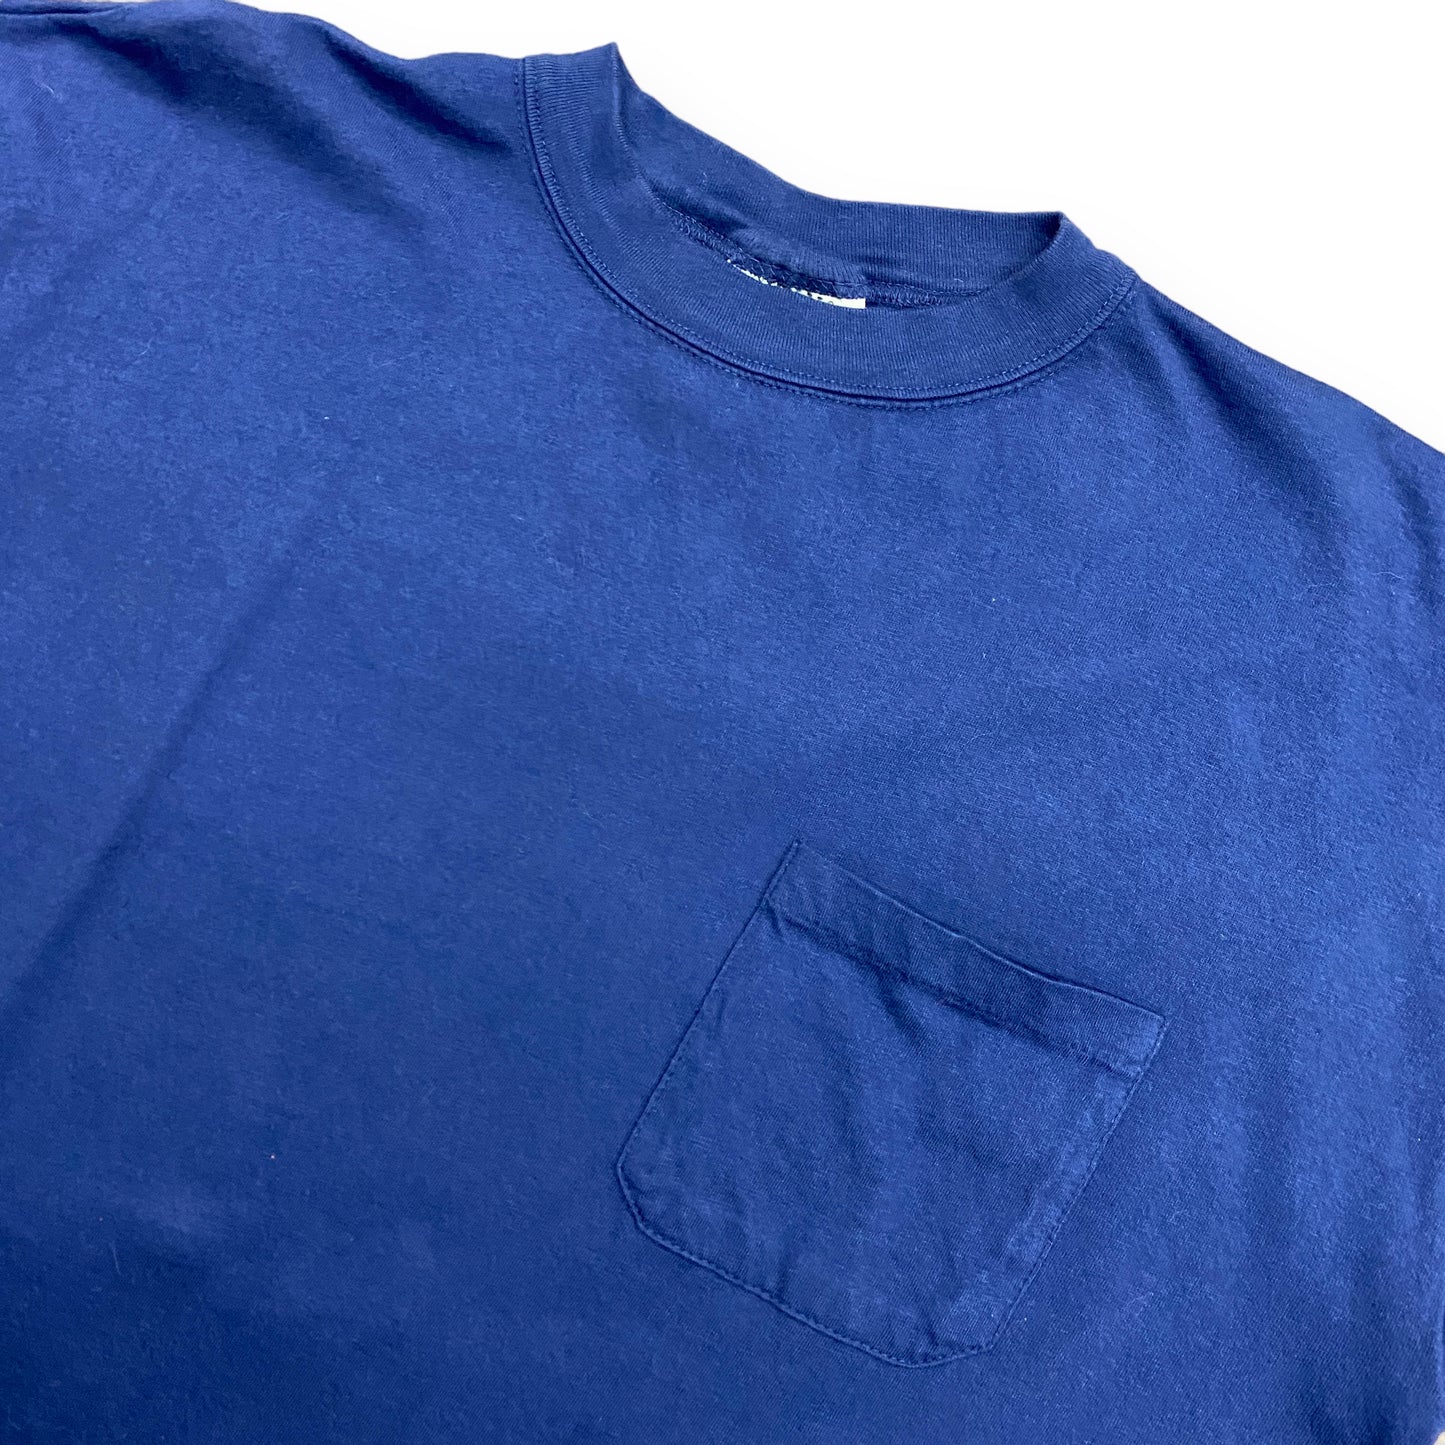 1990s Gitano Cropped Navy Blue Pocket Tee - Size Large